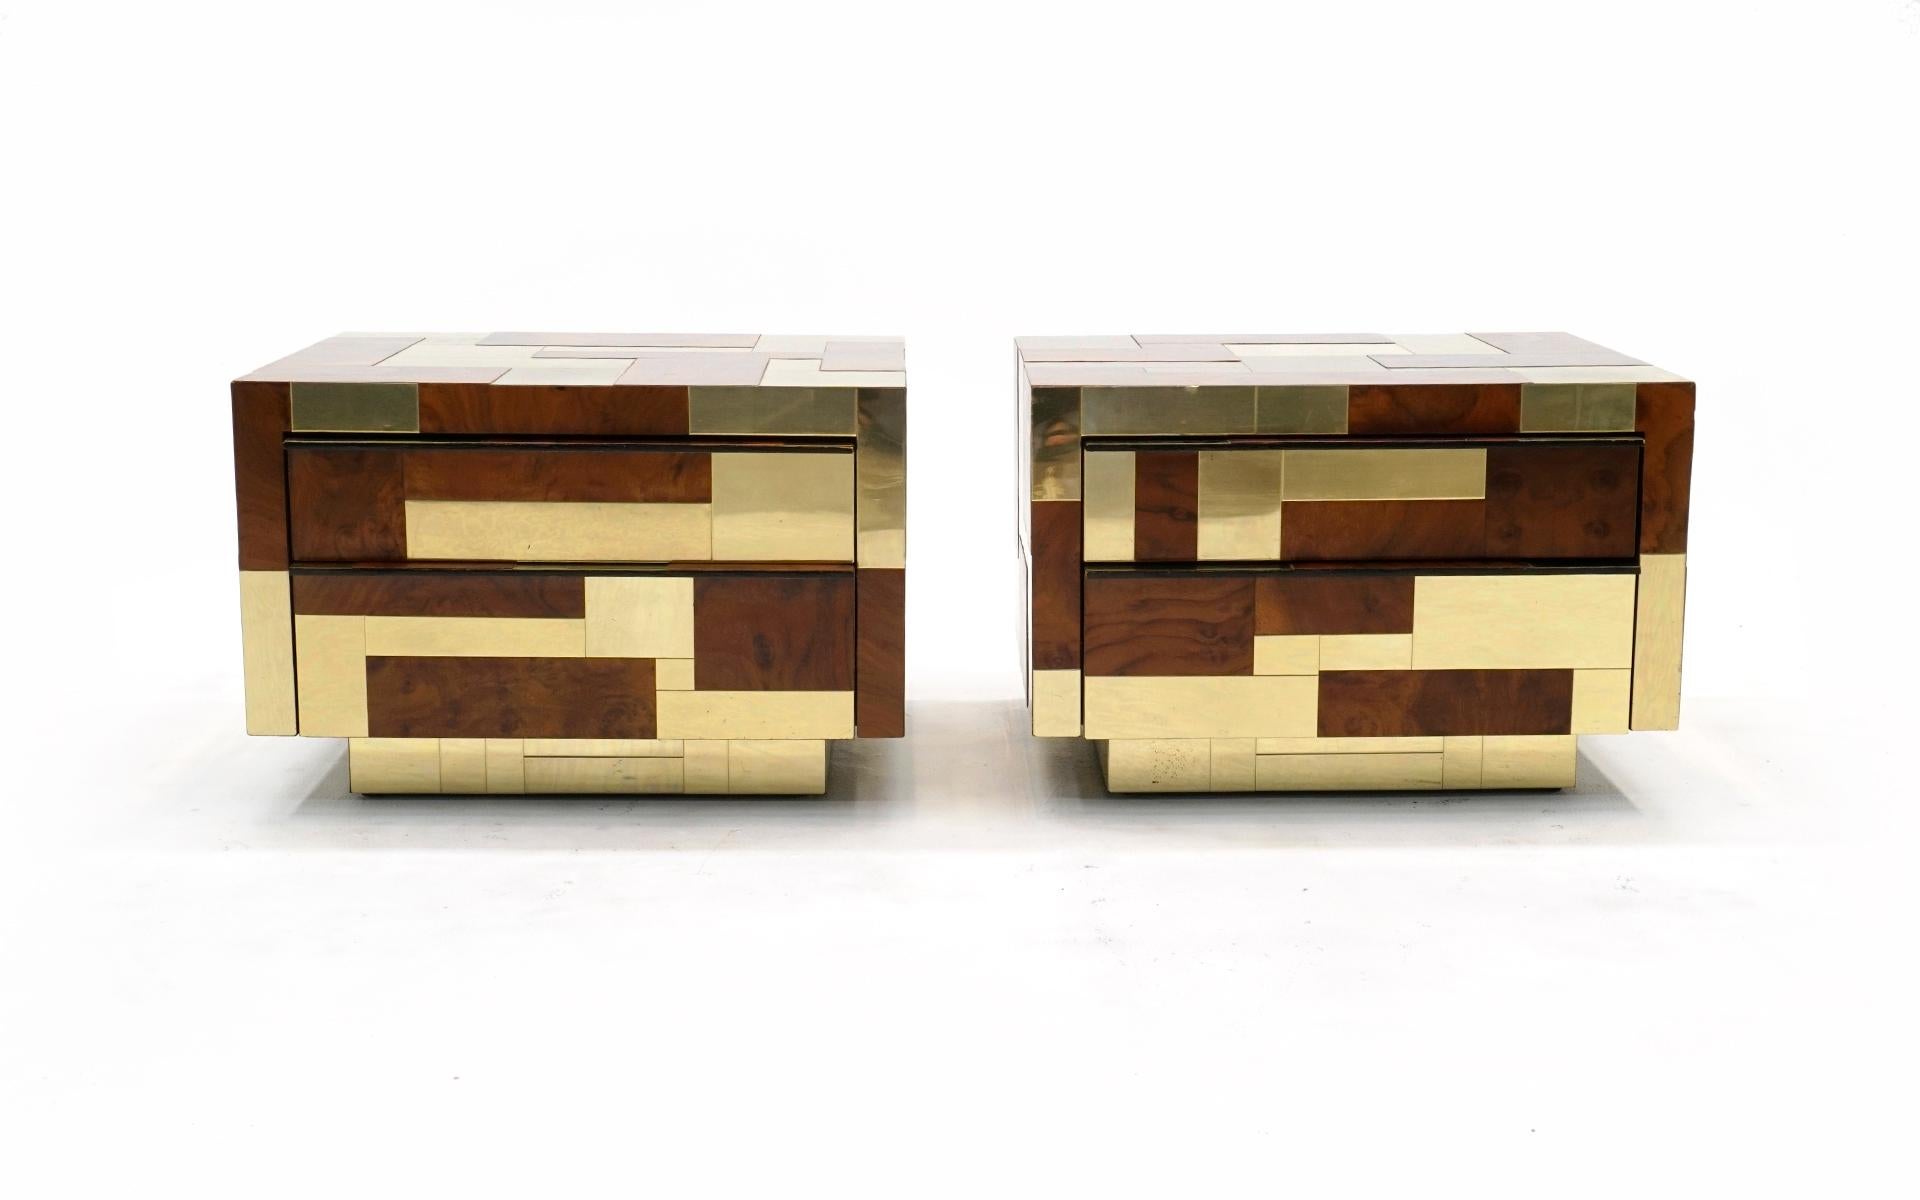 Rare et belle paire de tables de nuit Cityscape en loupe et laiton, conçue par Paul Evans pour Directional, dans les années 1970. Les deux ont deux tiroirs qui fonctionnent parfaitement. Des grappes de rayures légères sur quelques panneaux en laiton